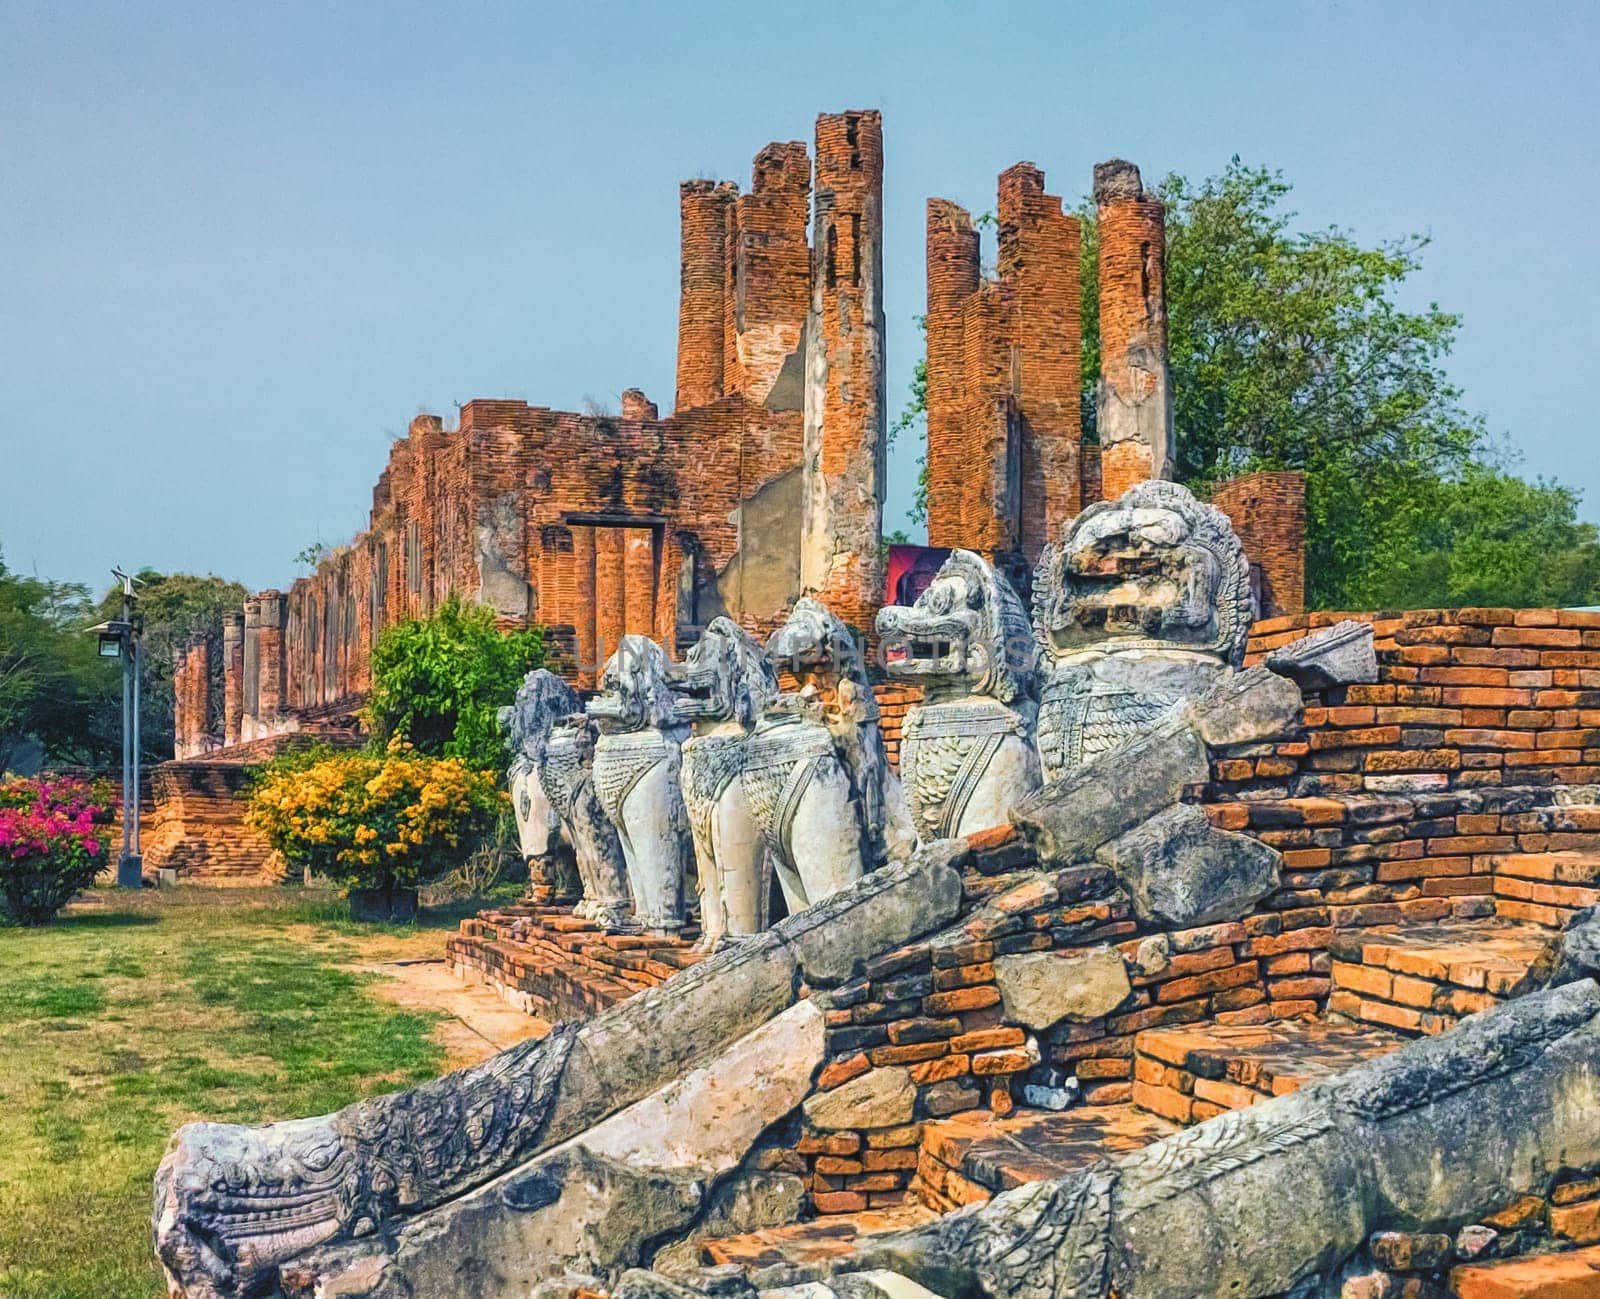 Wat thammikarat temple, Unesco World Heritage, by day in Ayutthaya, Thailand